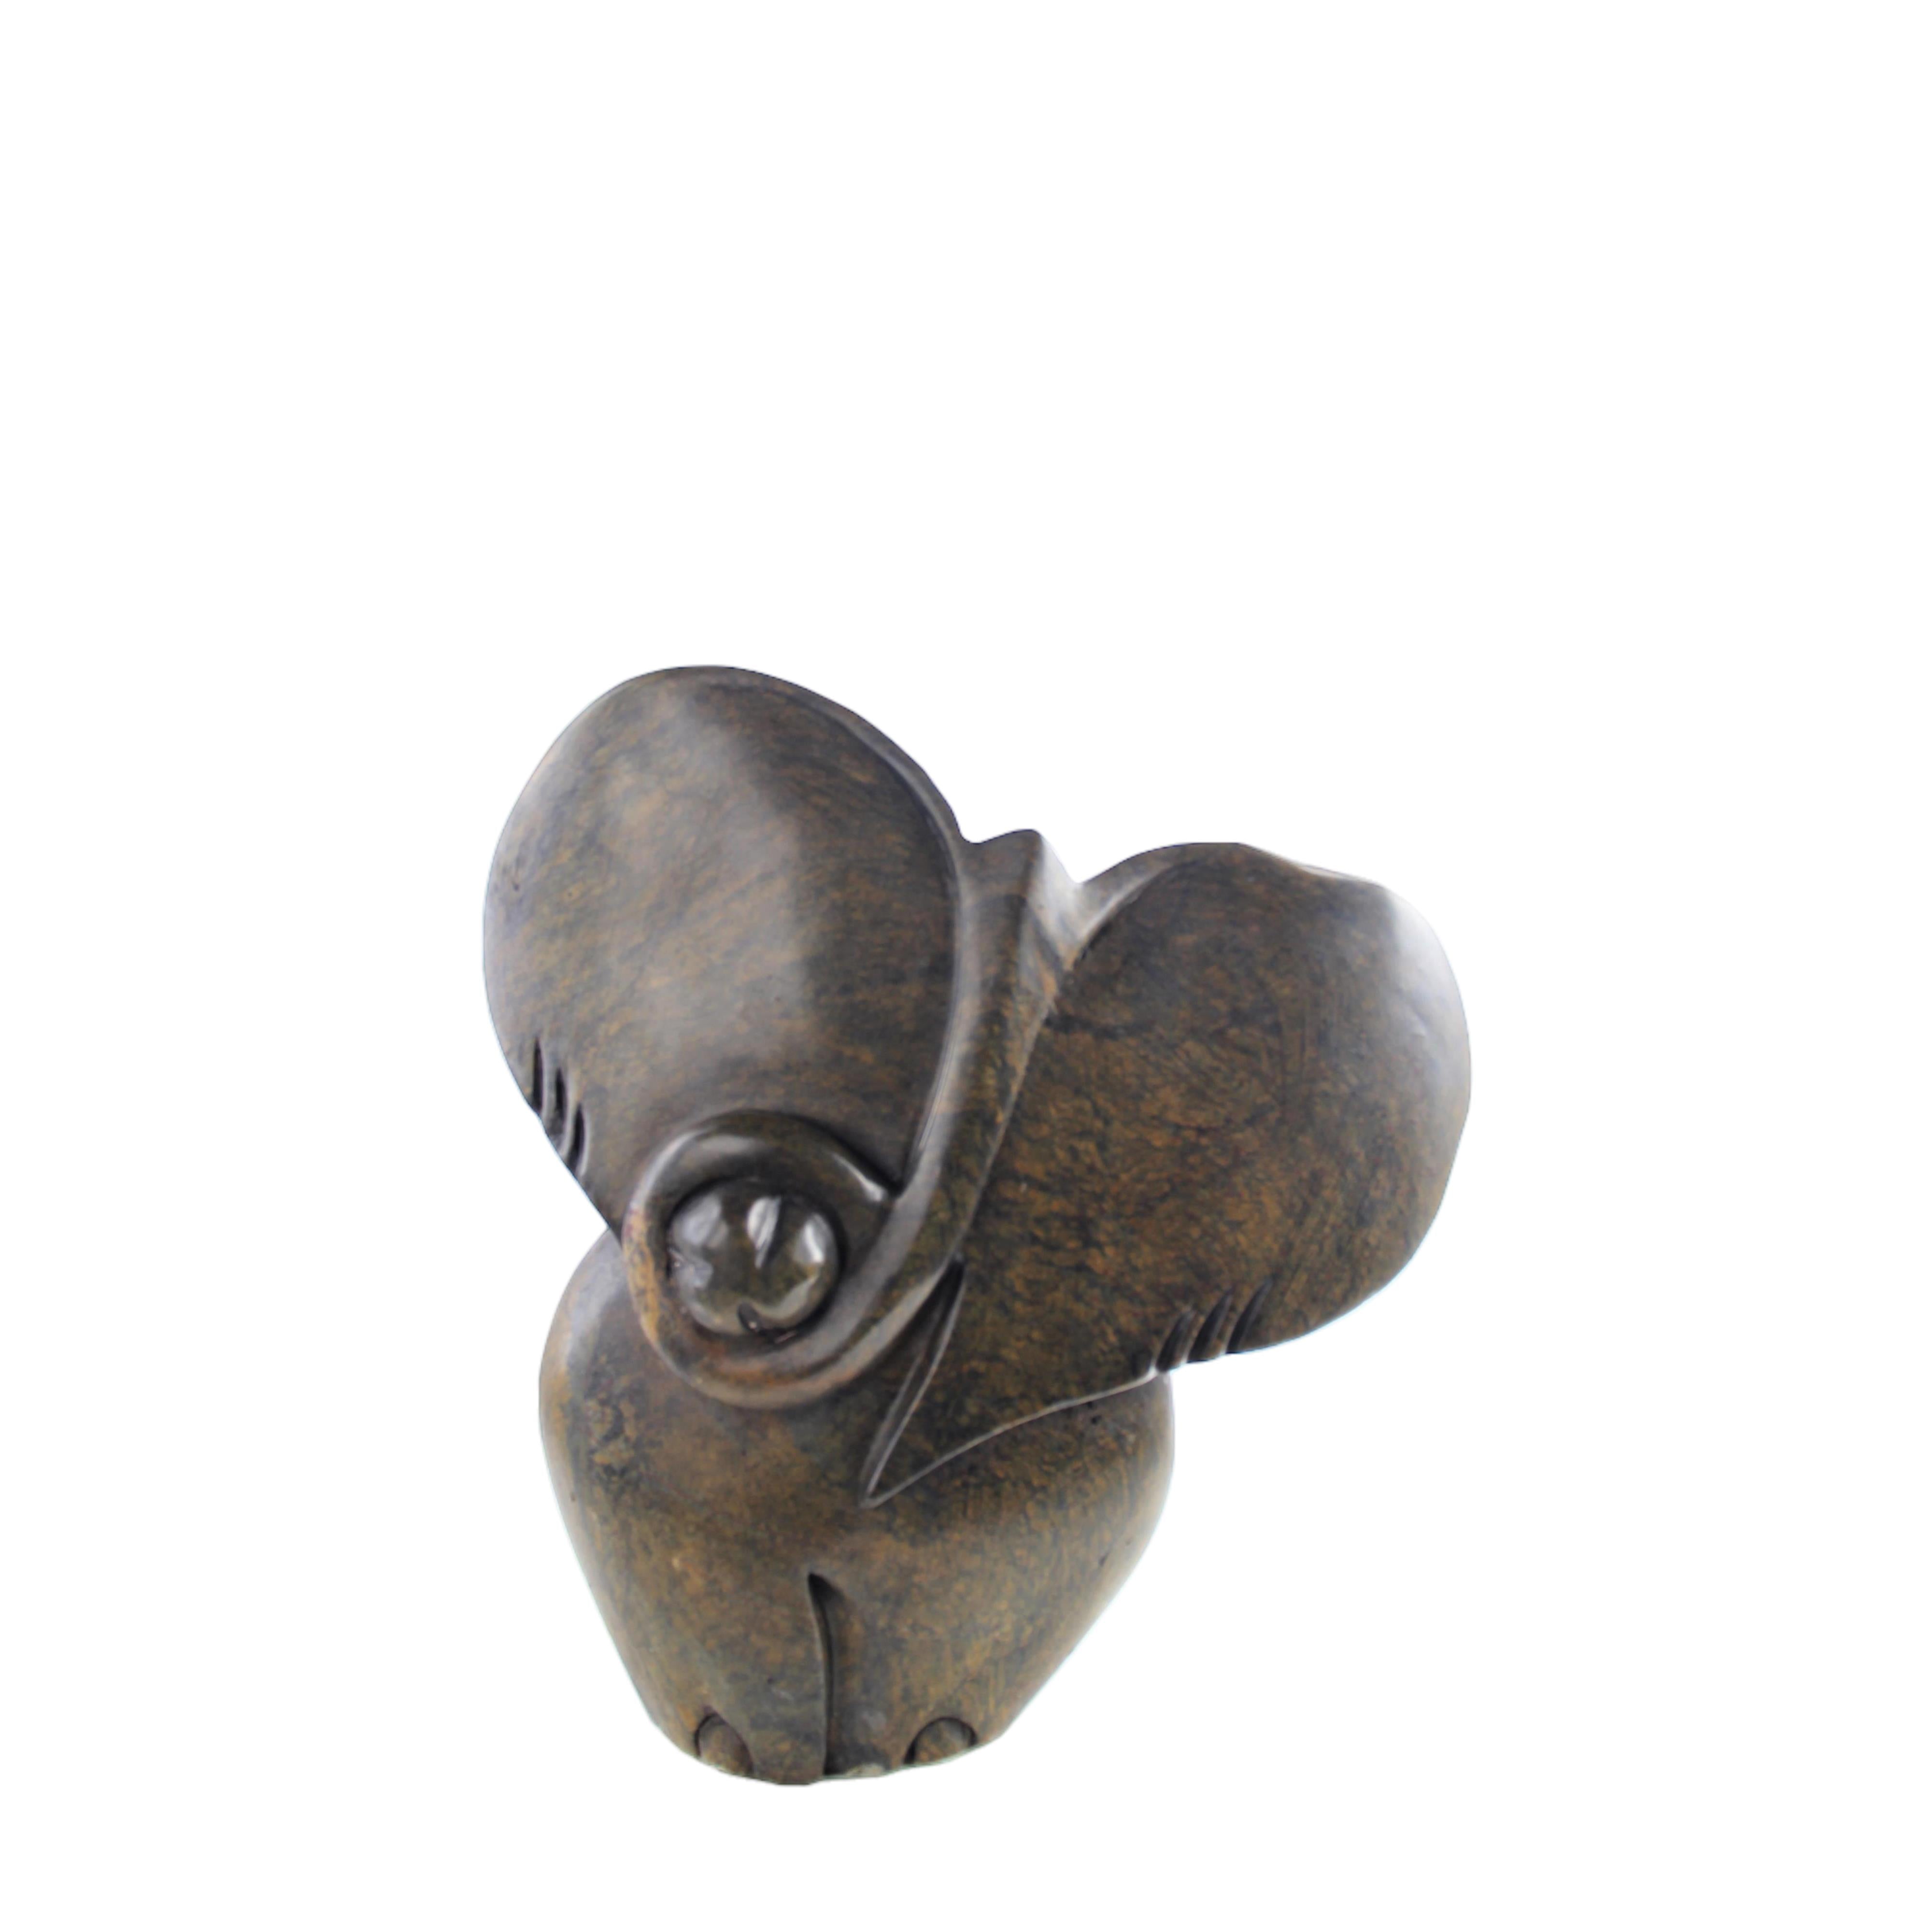 Shona Tribe Serpentine Stone Elephant ~15.0" Tall